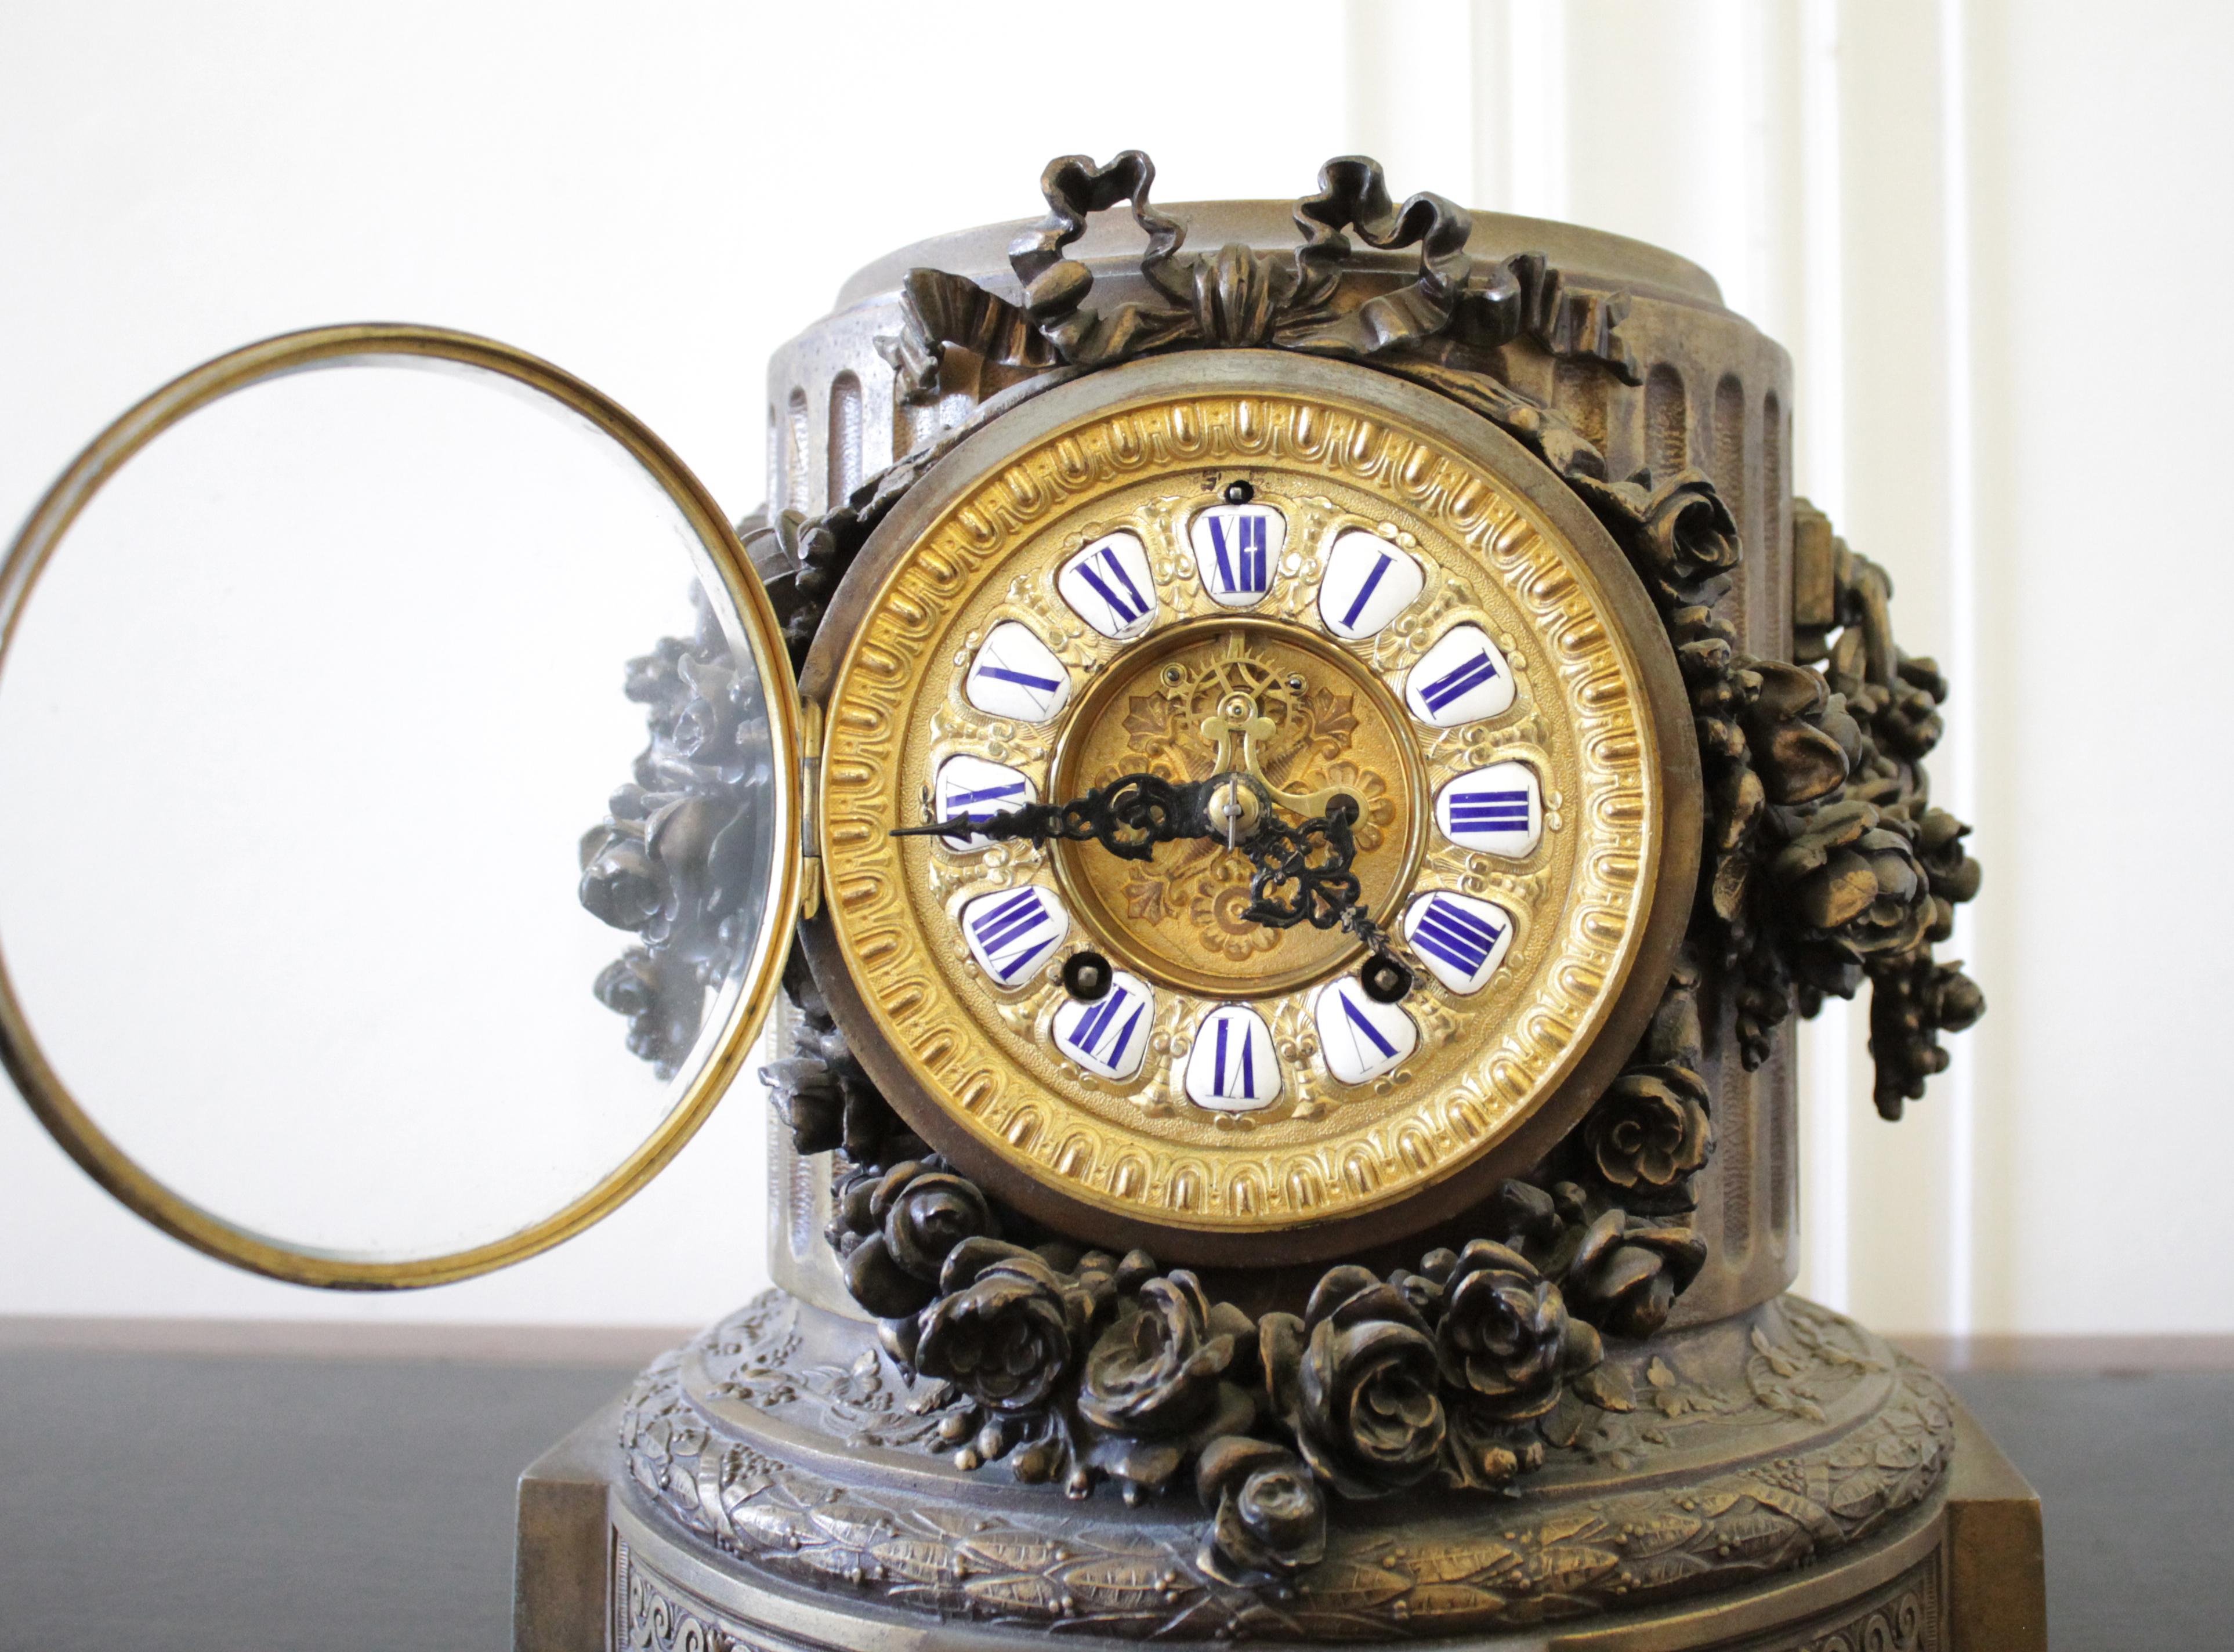 Französische Manteluhr aus vergoldeter Bronze aus dem späten 19. Jahrhundert mit Rosenkränzen.
Verziert mit einer großen Schleife aus Band und Rosenbüscheln um das Zifferblatt und die Seiten der Uhr. Ein schönes dekoratives Prägemuster befindet